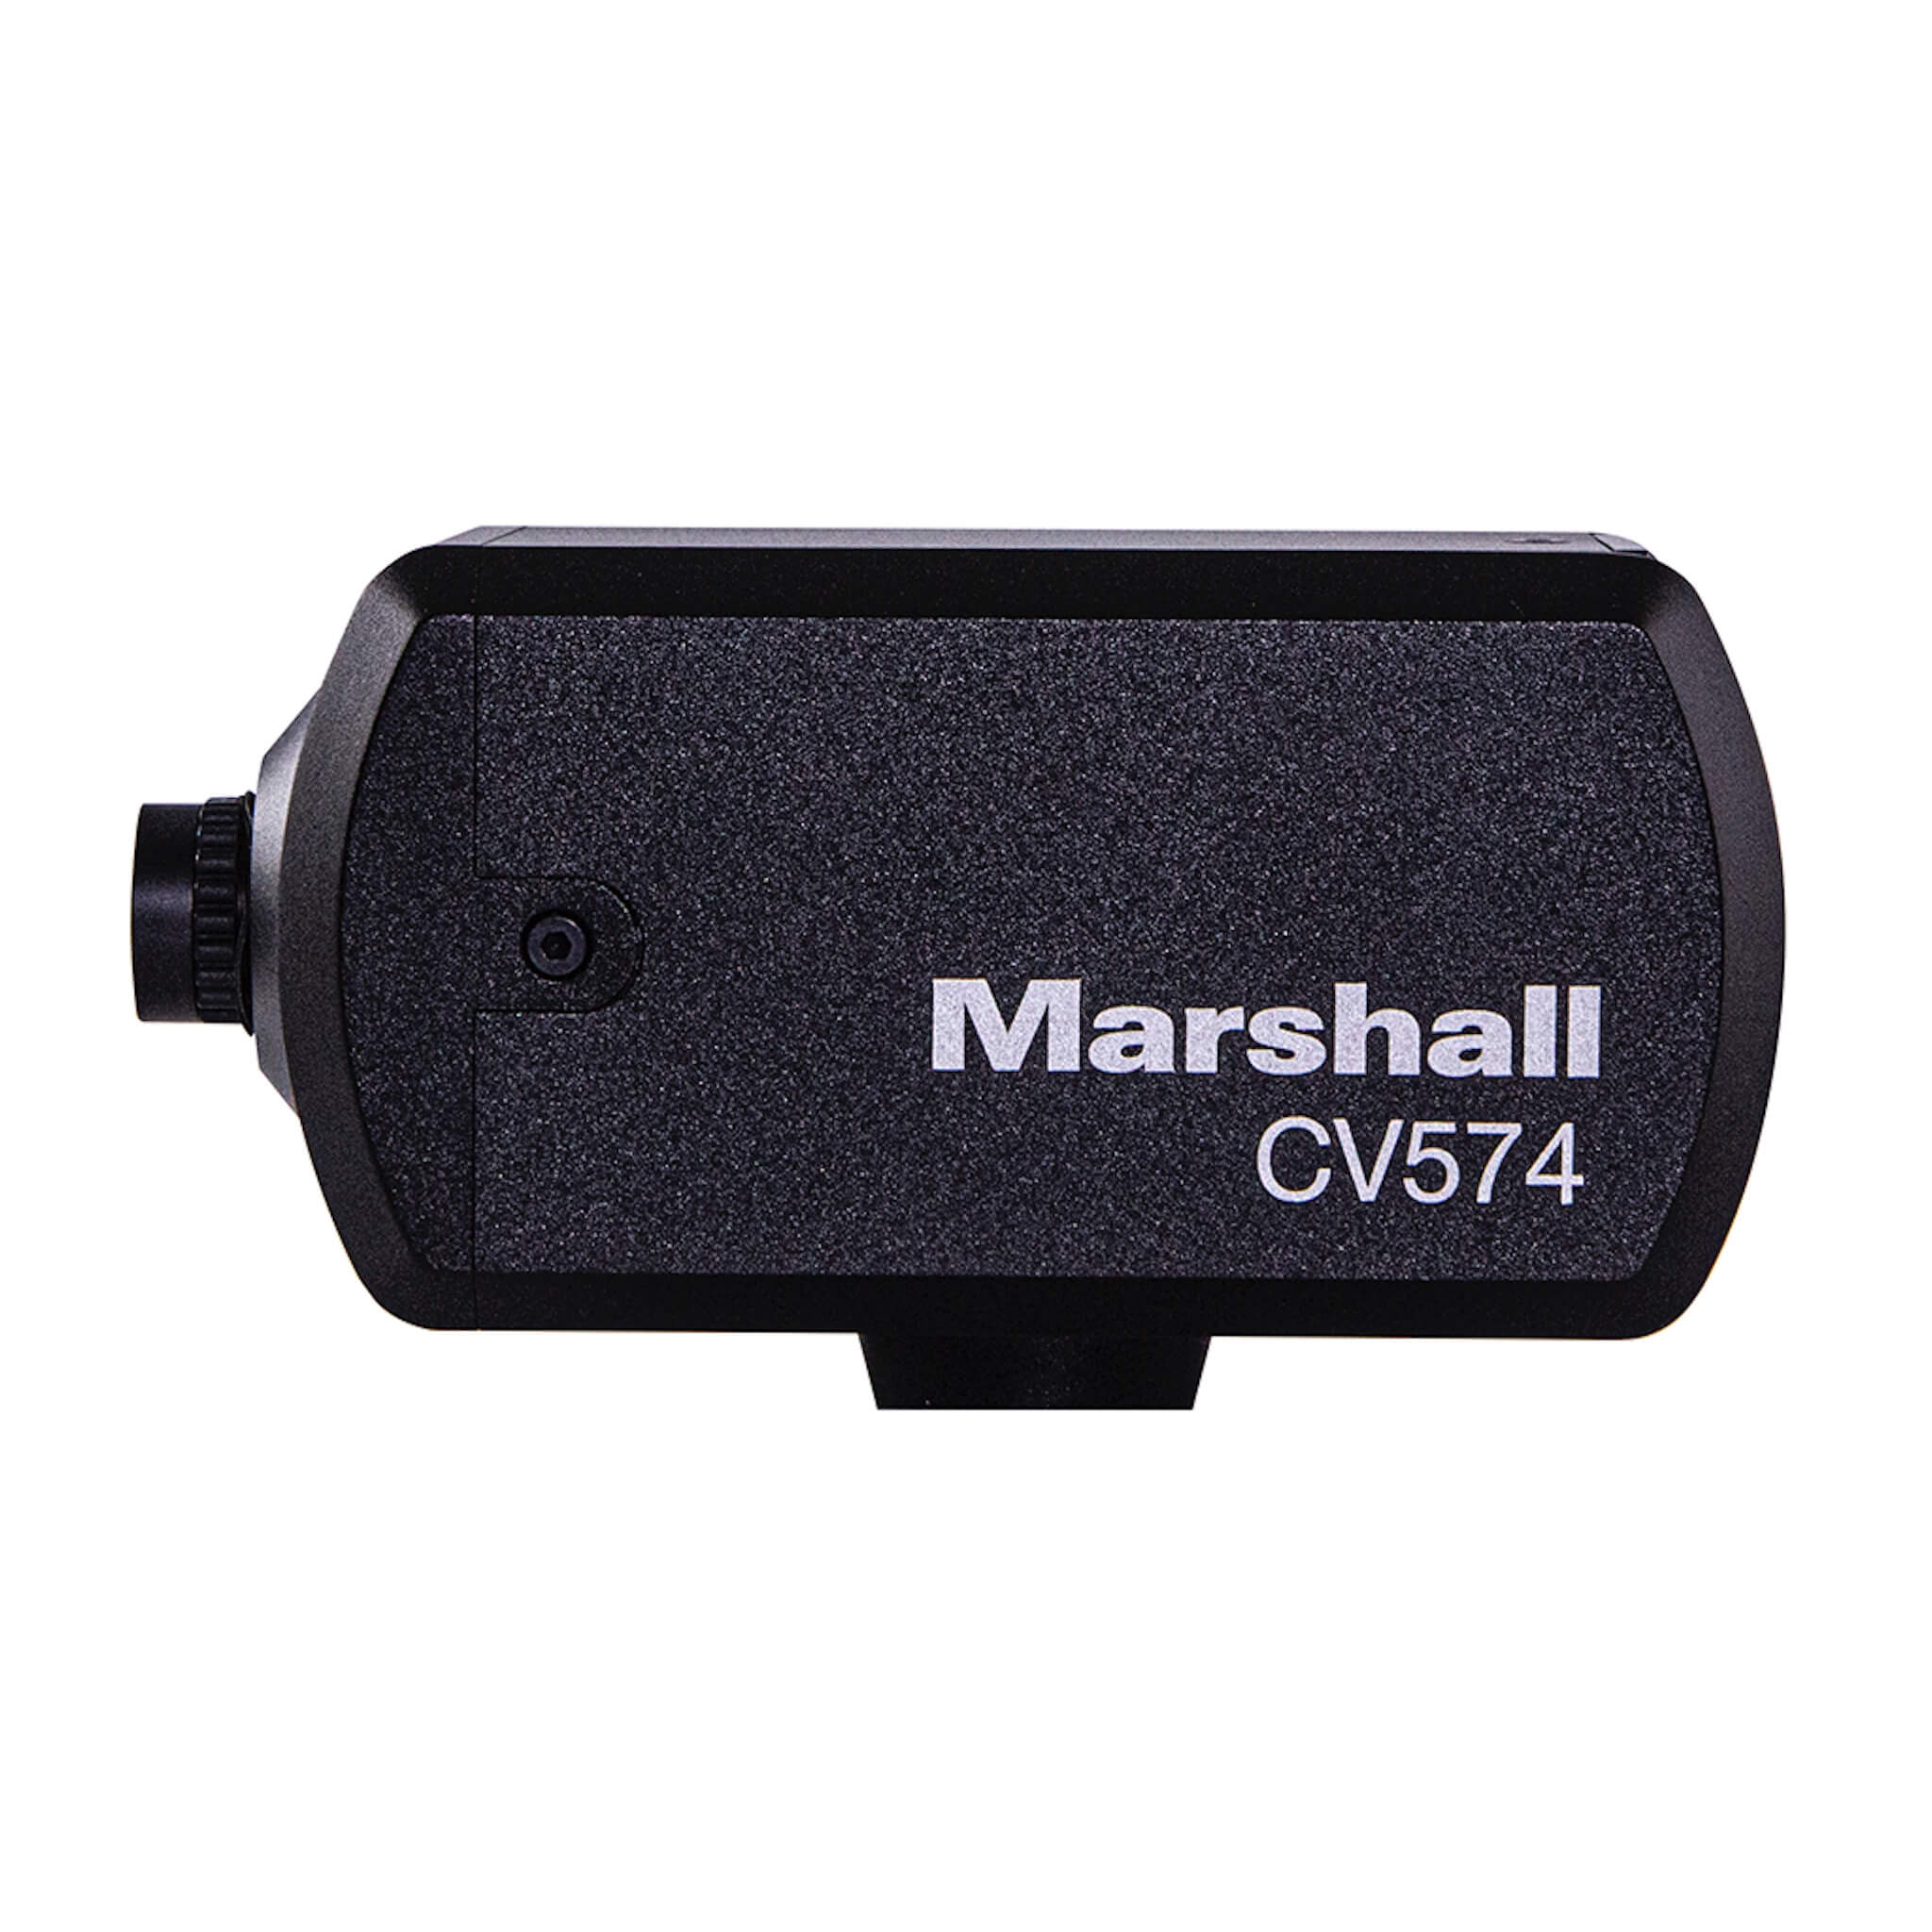 Marshall CV574 - Miniature 4K UHD Video Camera with NDI|HX3 and HDMI, left